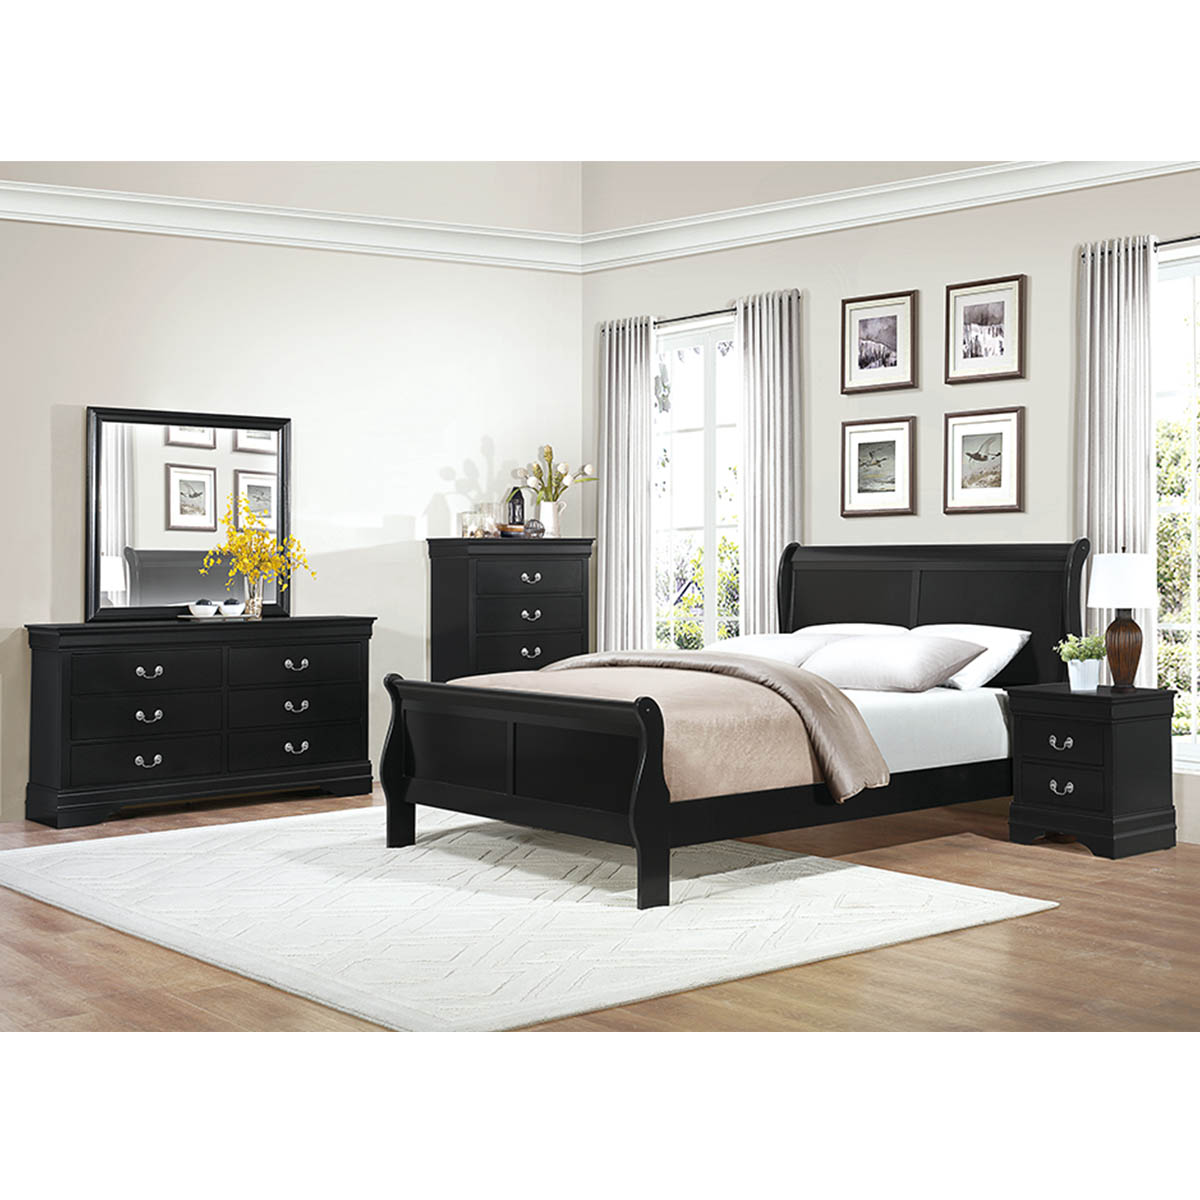 Homelegance Mayville Black Queen Sleigh Bed, Dresser, Mirror & Nightstand